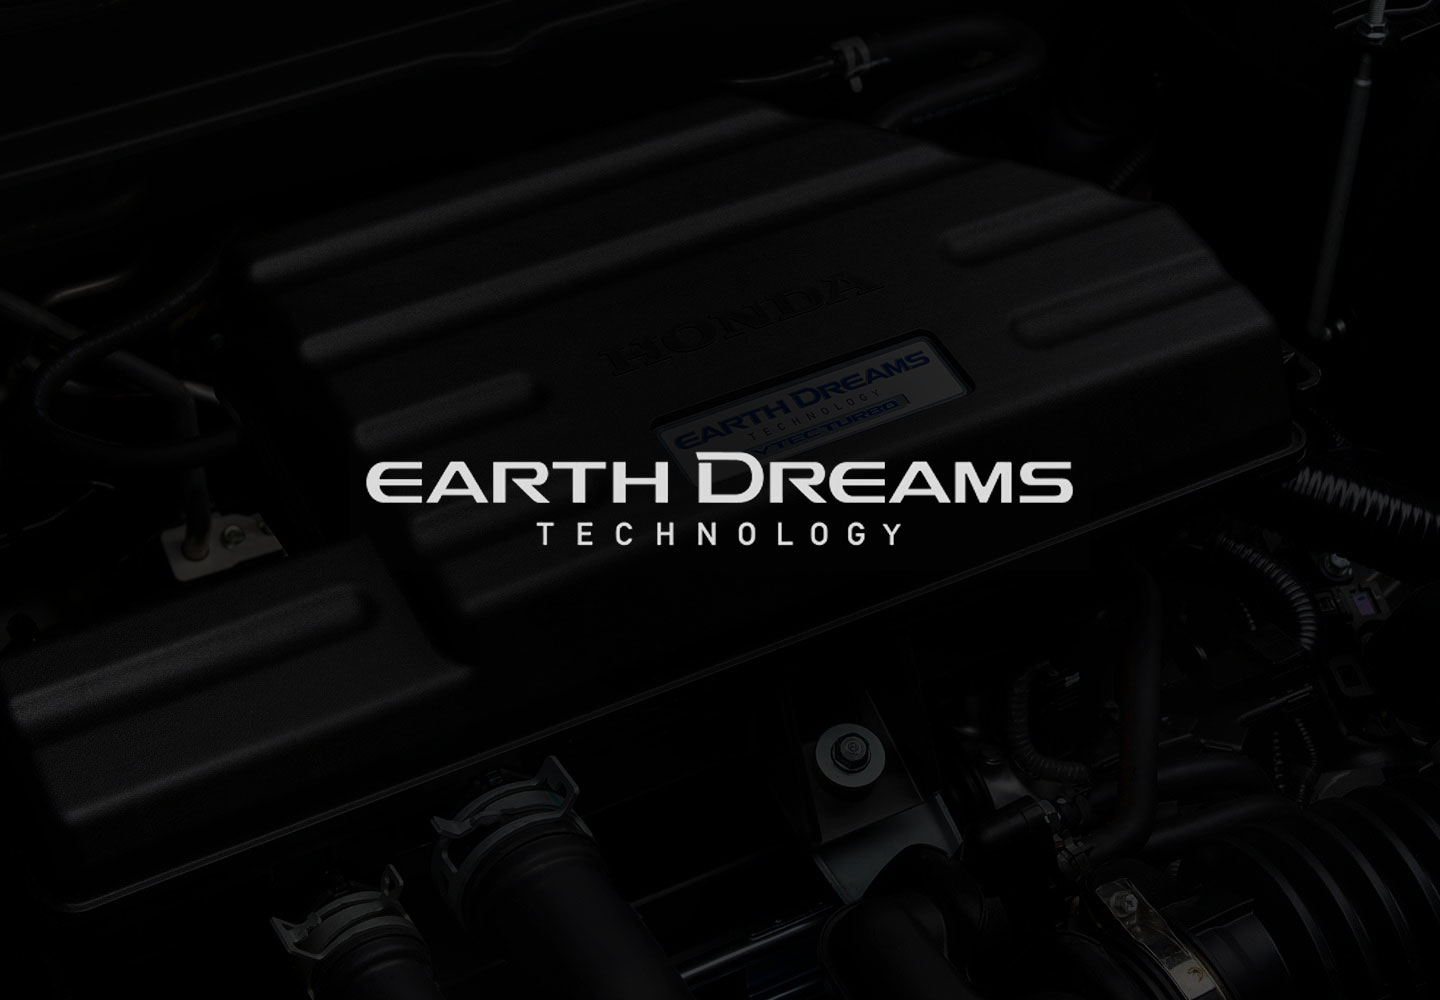 Earth dreams technology*